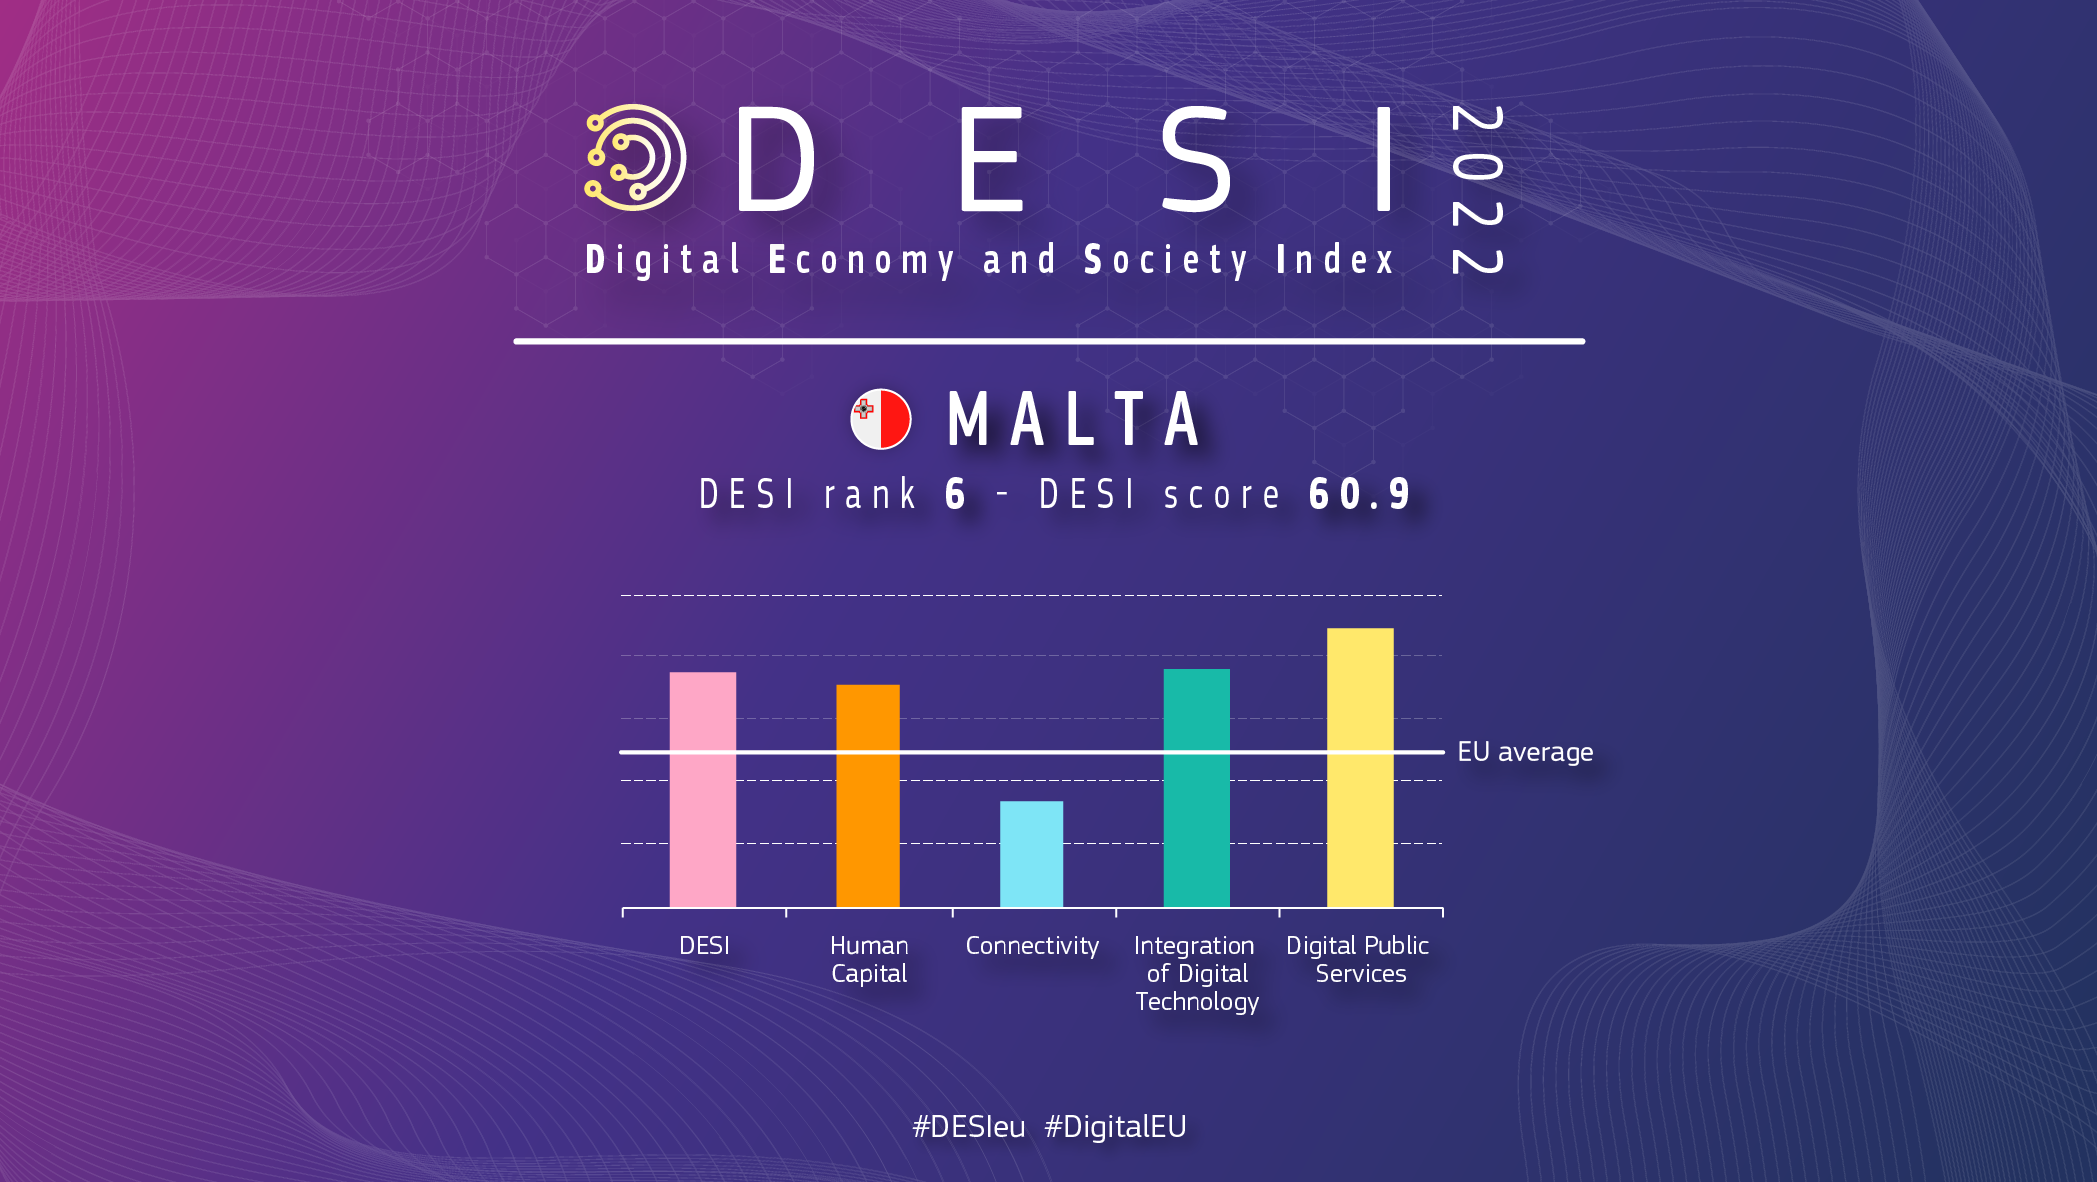 Grafisch overzicht van Malta in DESI met een ranking van 6 met een score van 60,9